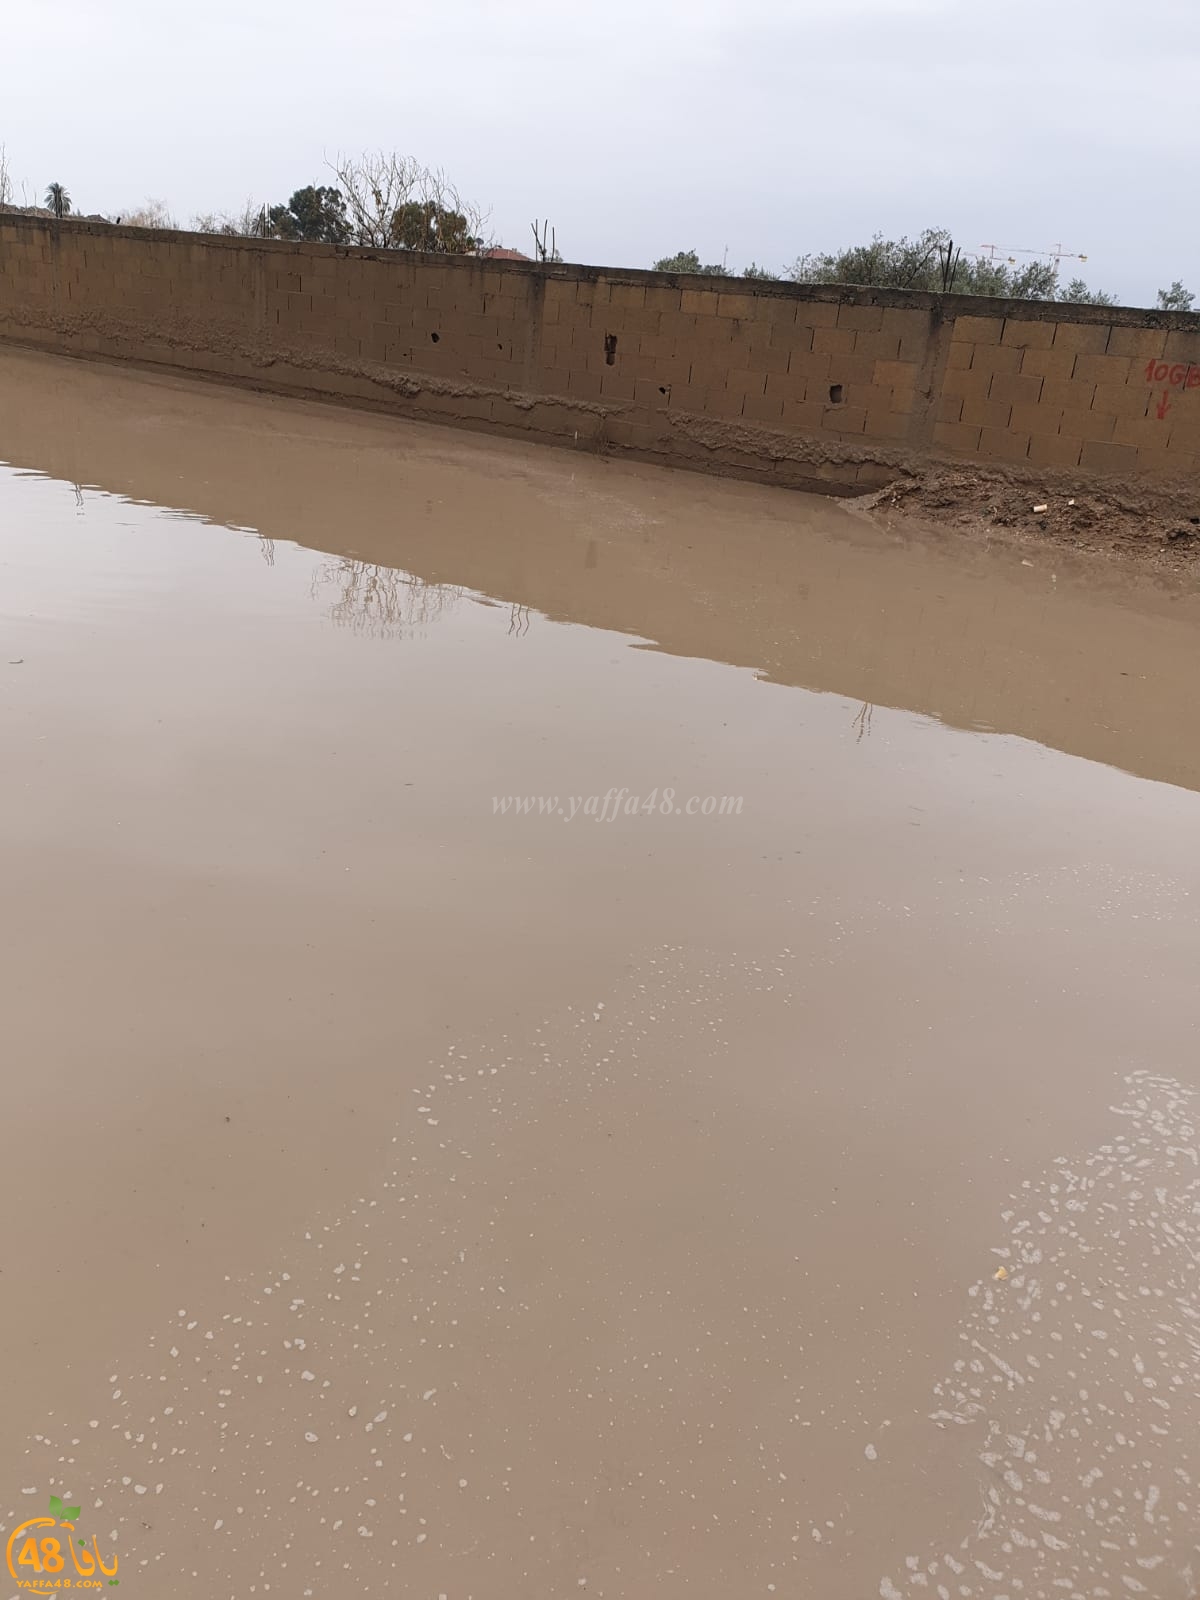 كما هو الحال طيلة عشرات السنين - قرية دهمش تحت حصار مياه الأمطار دون حلول